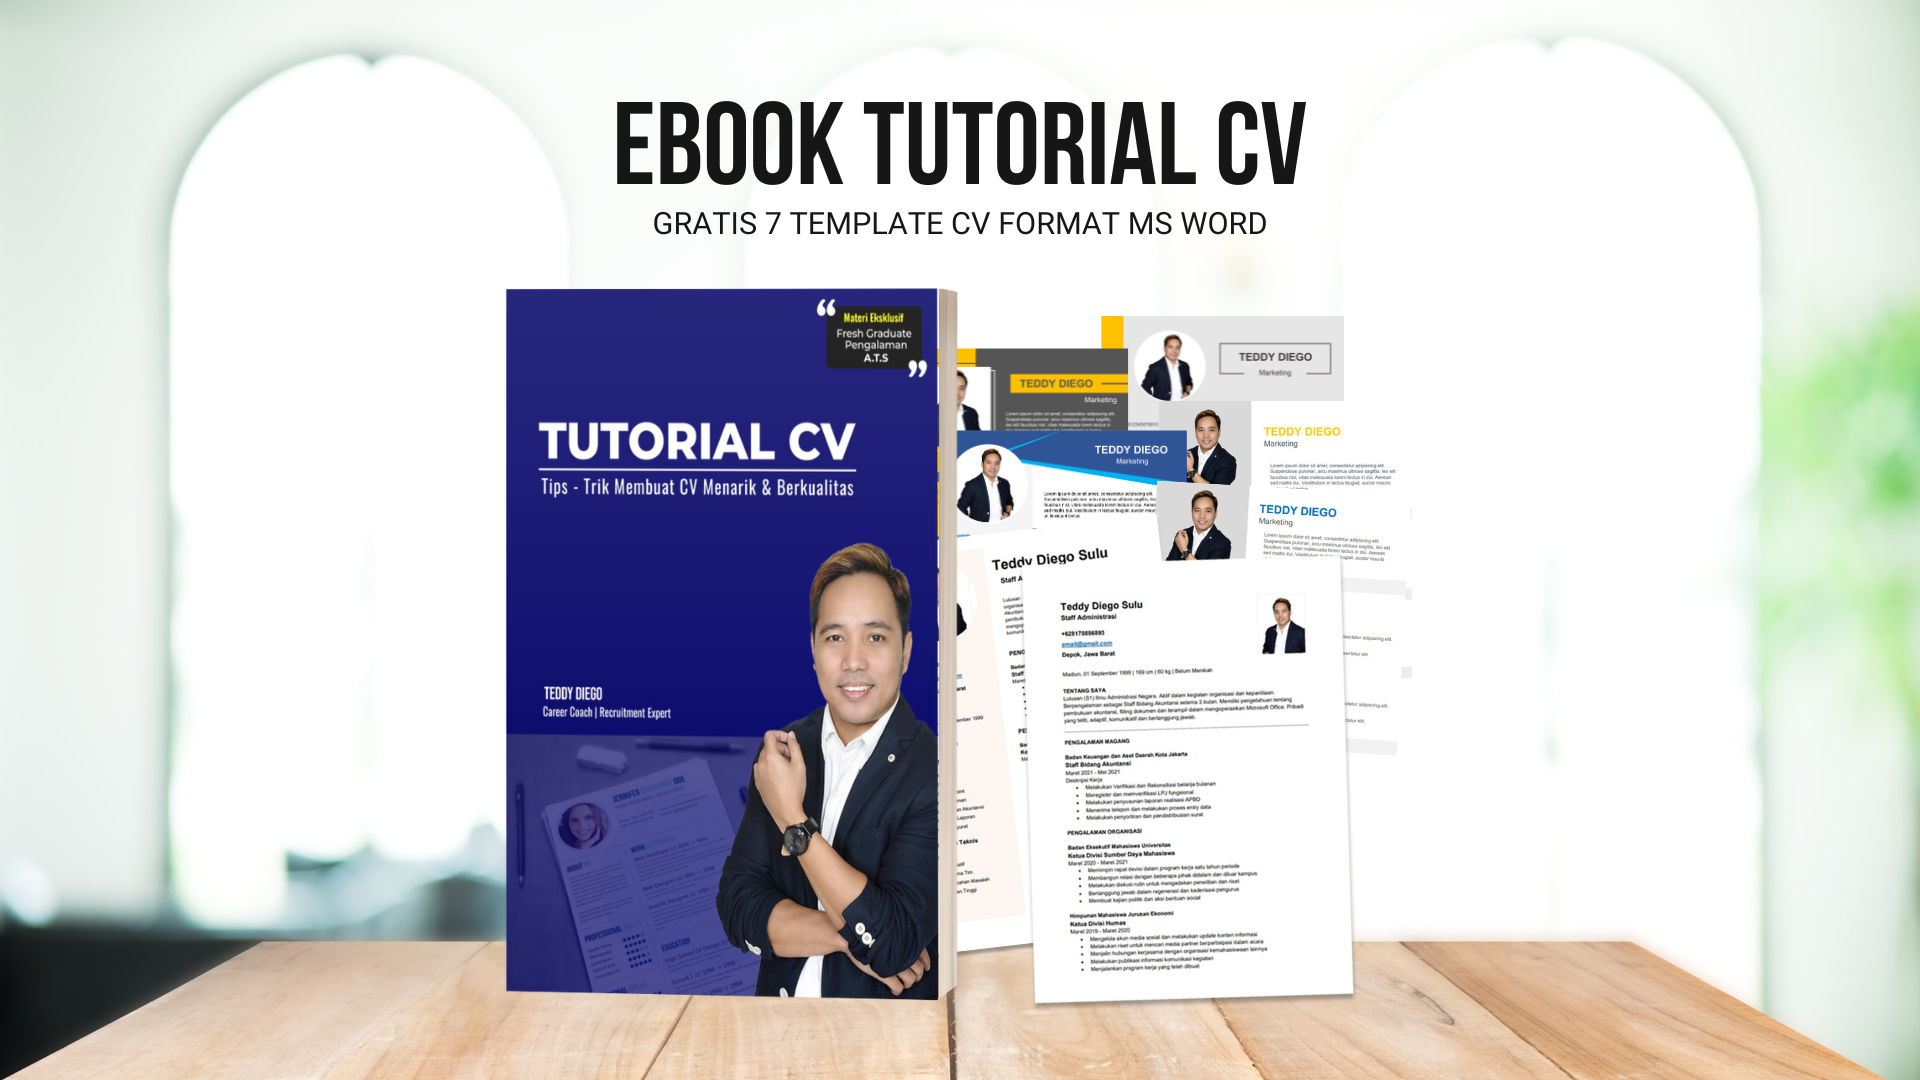 Ebook Tutorial CV